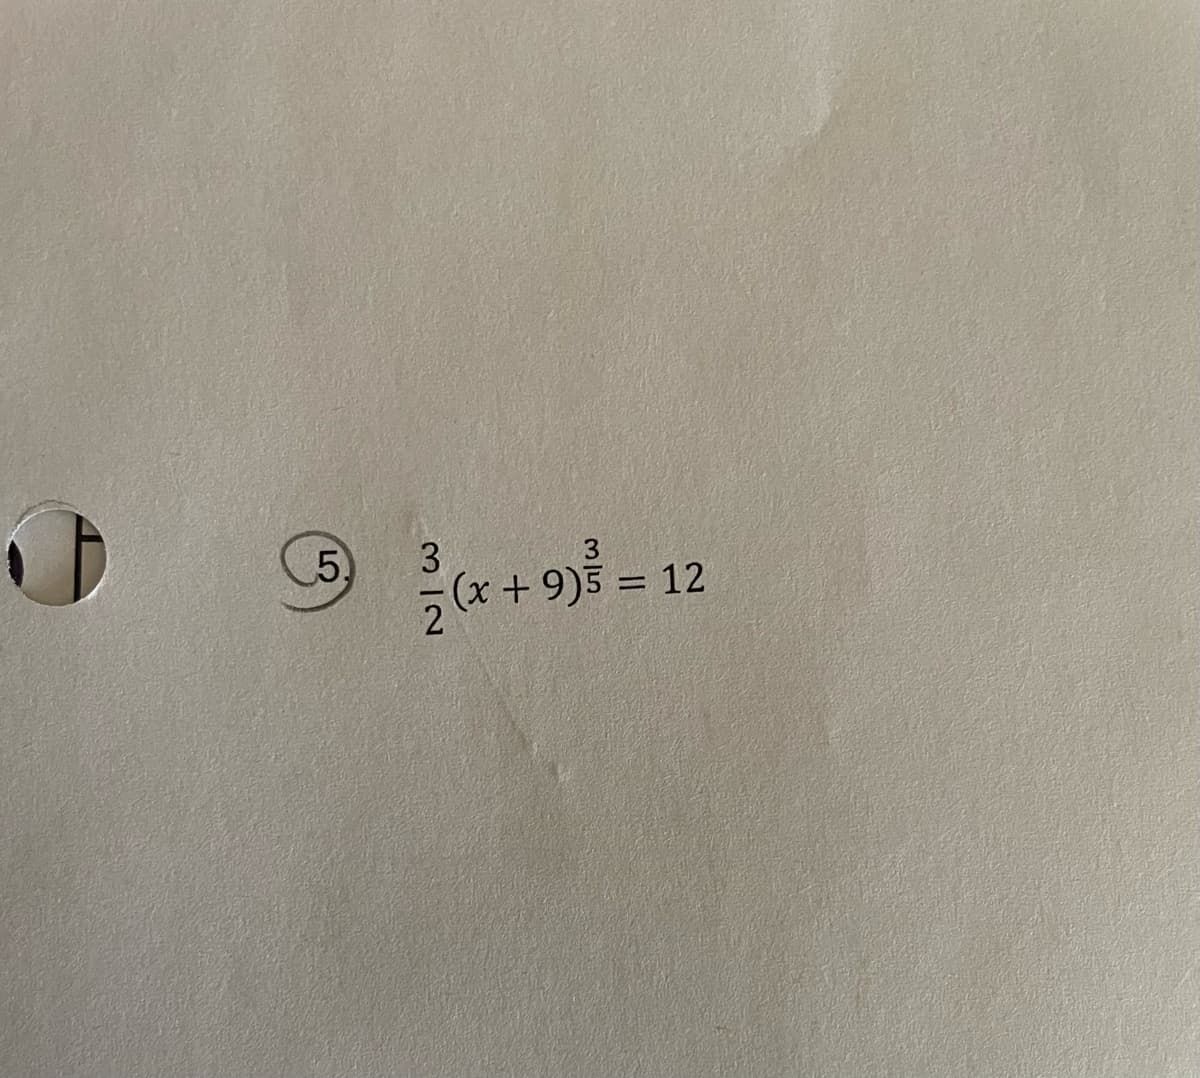 (5
3.
9)5 =
12
